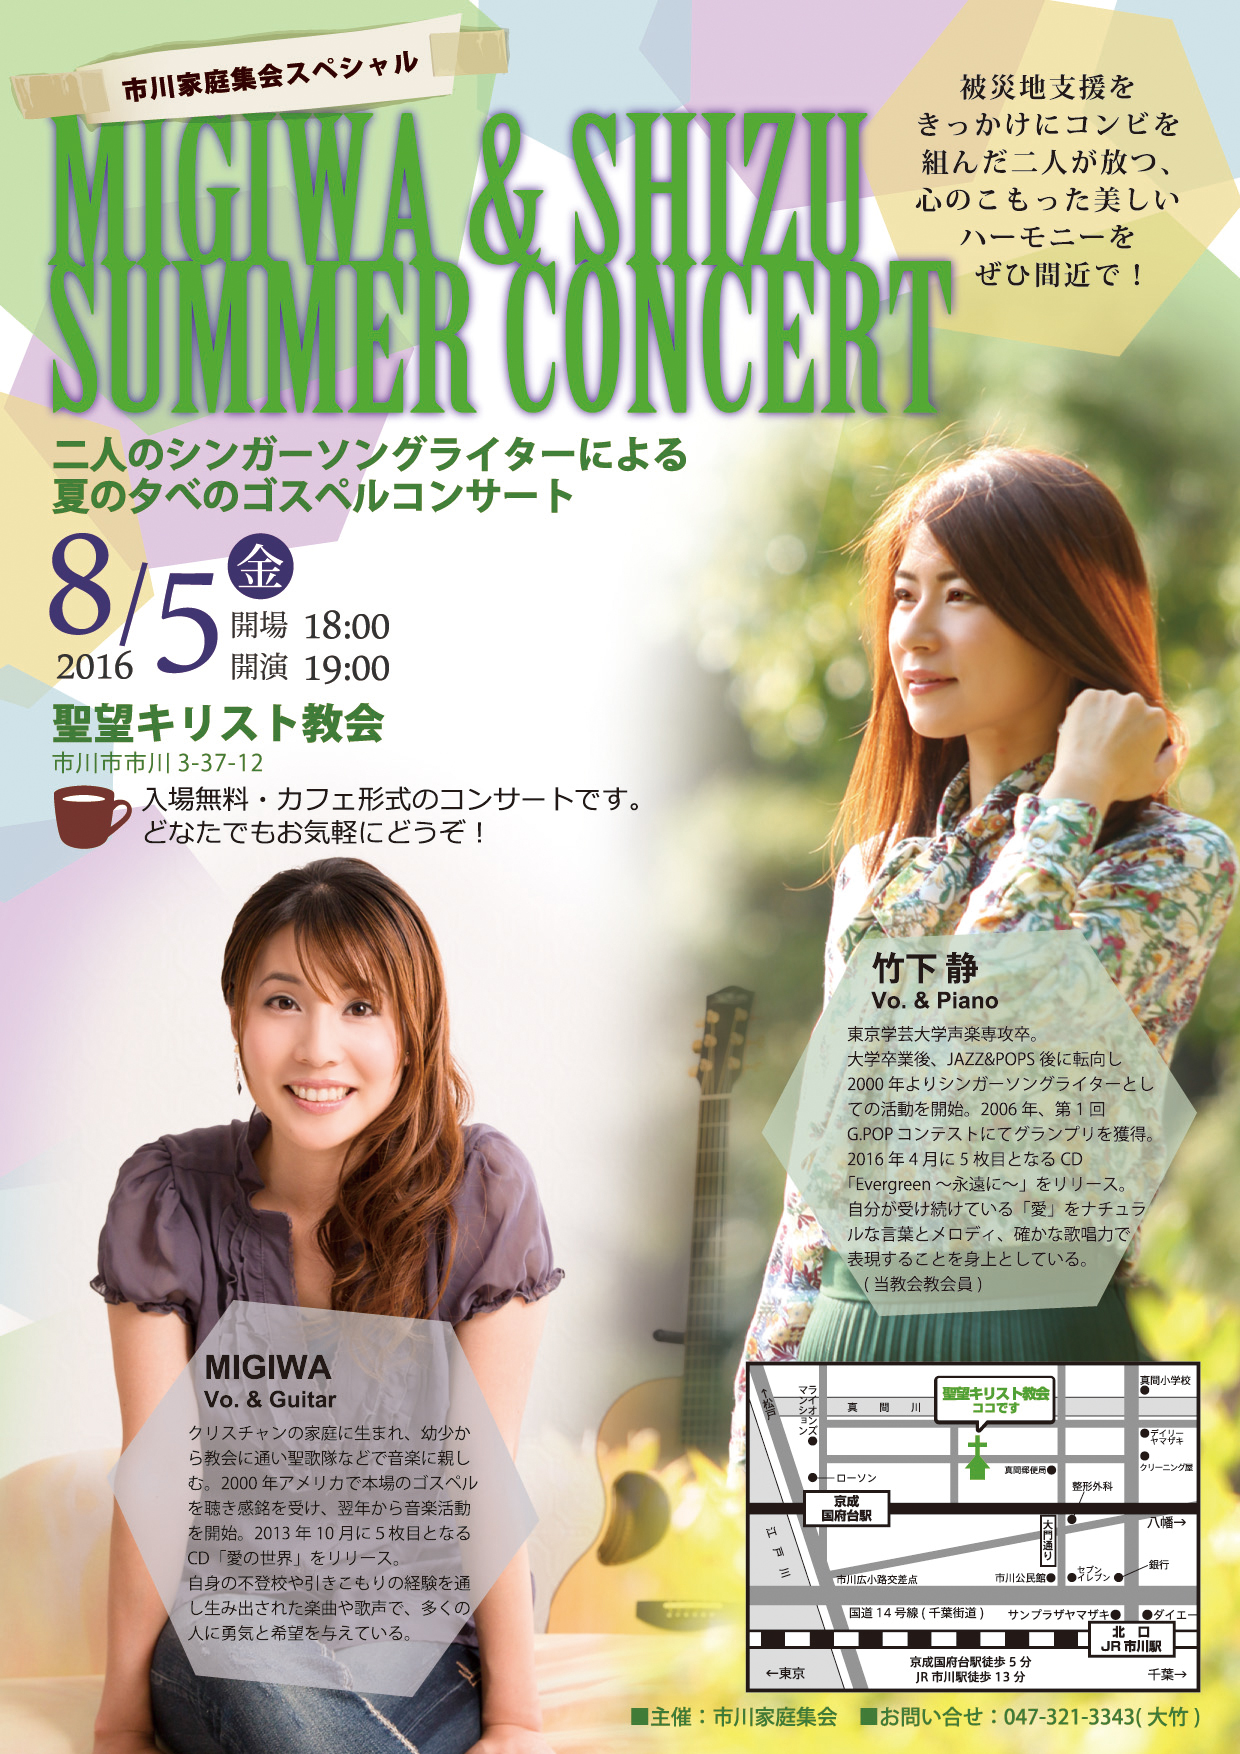 Migiwa & Shizu Summer Concert in 市川家庭集会 @ 市川市 | 千葉県 | 日本